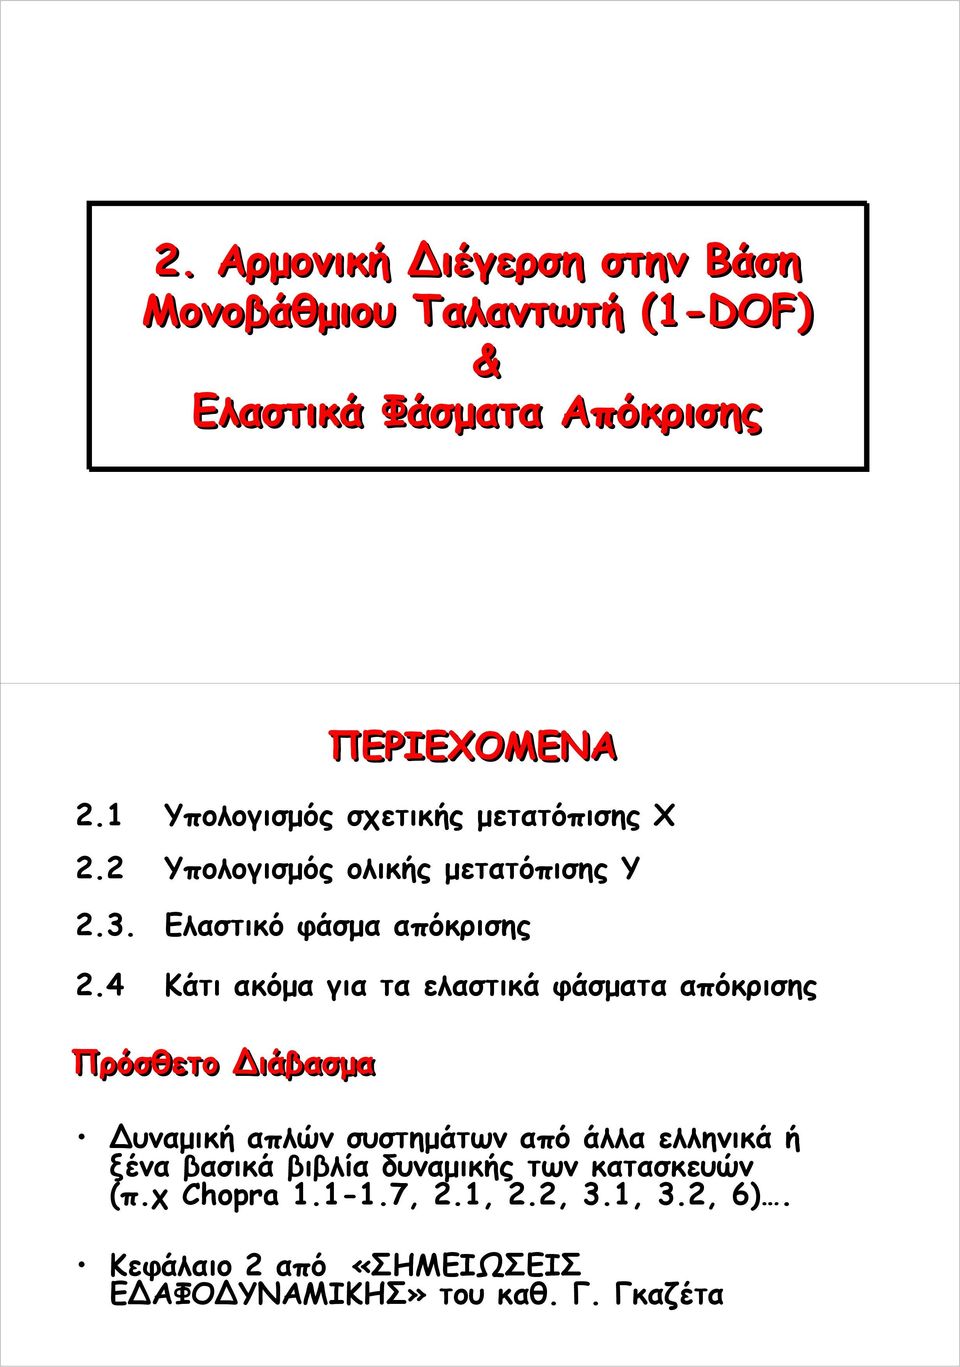 4 Κάτι ακόμα για τα ελαστικά φάσματα απόκρισης Πρόσθετο ιάβασμα υναμική απλών συστημάτων από άλλα ελληνικά ή